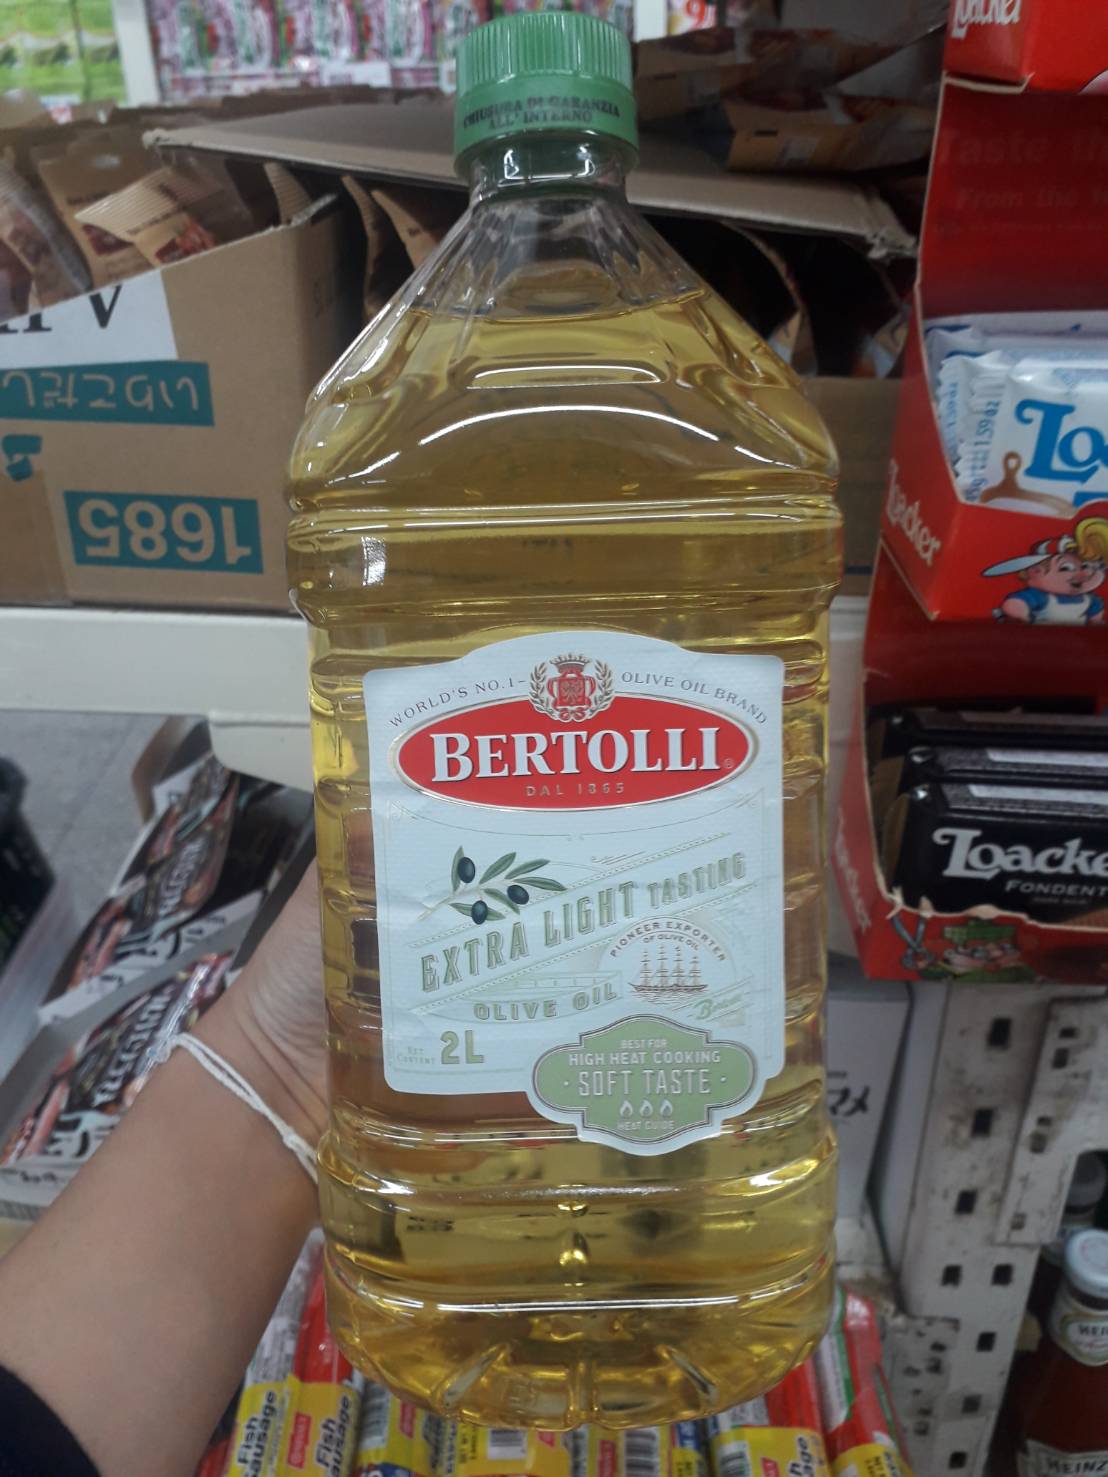 Bertolli Extra light น้ำมันมะกอก คุณภาพดี นำเข้าจากอิตาลี ขนาด 2 ลิตร